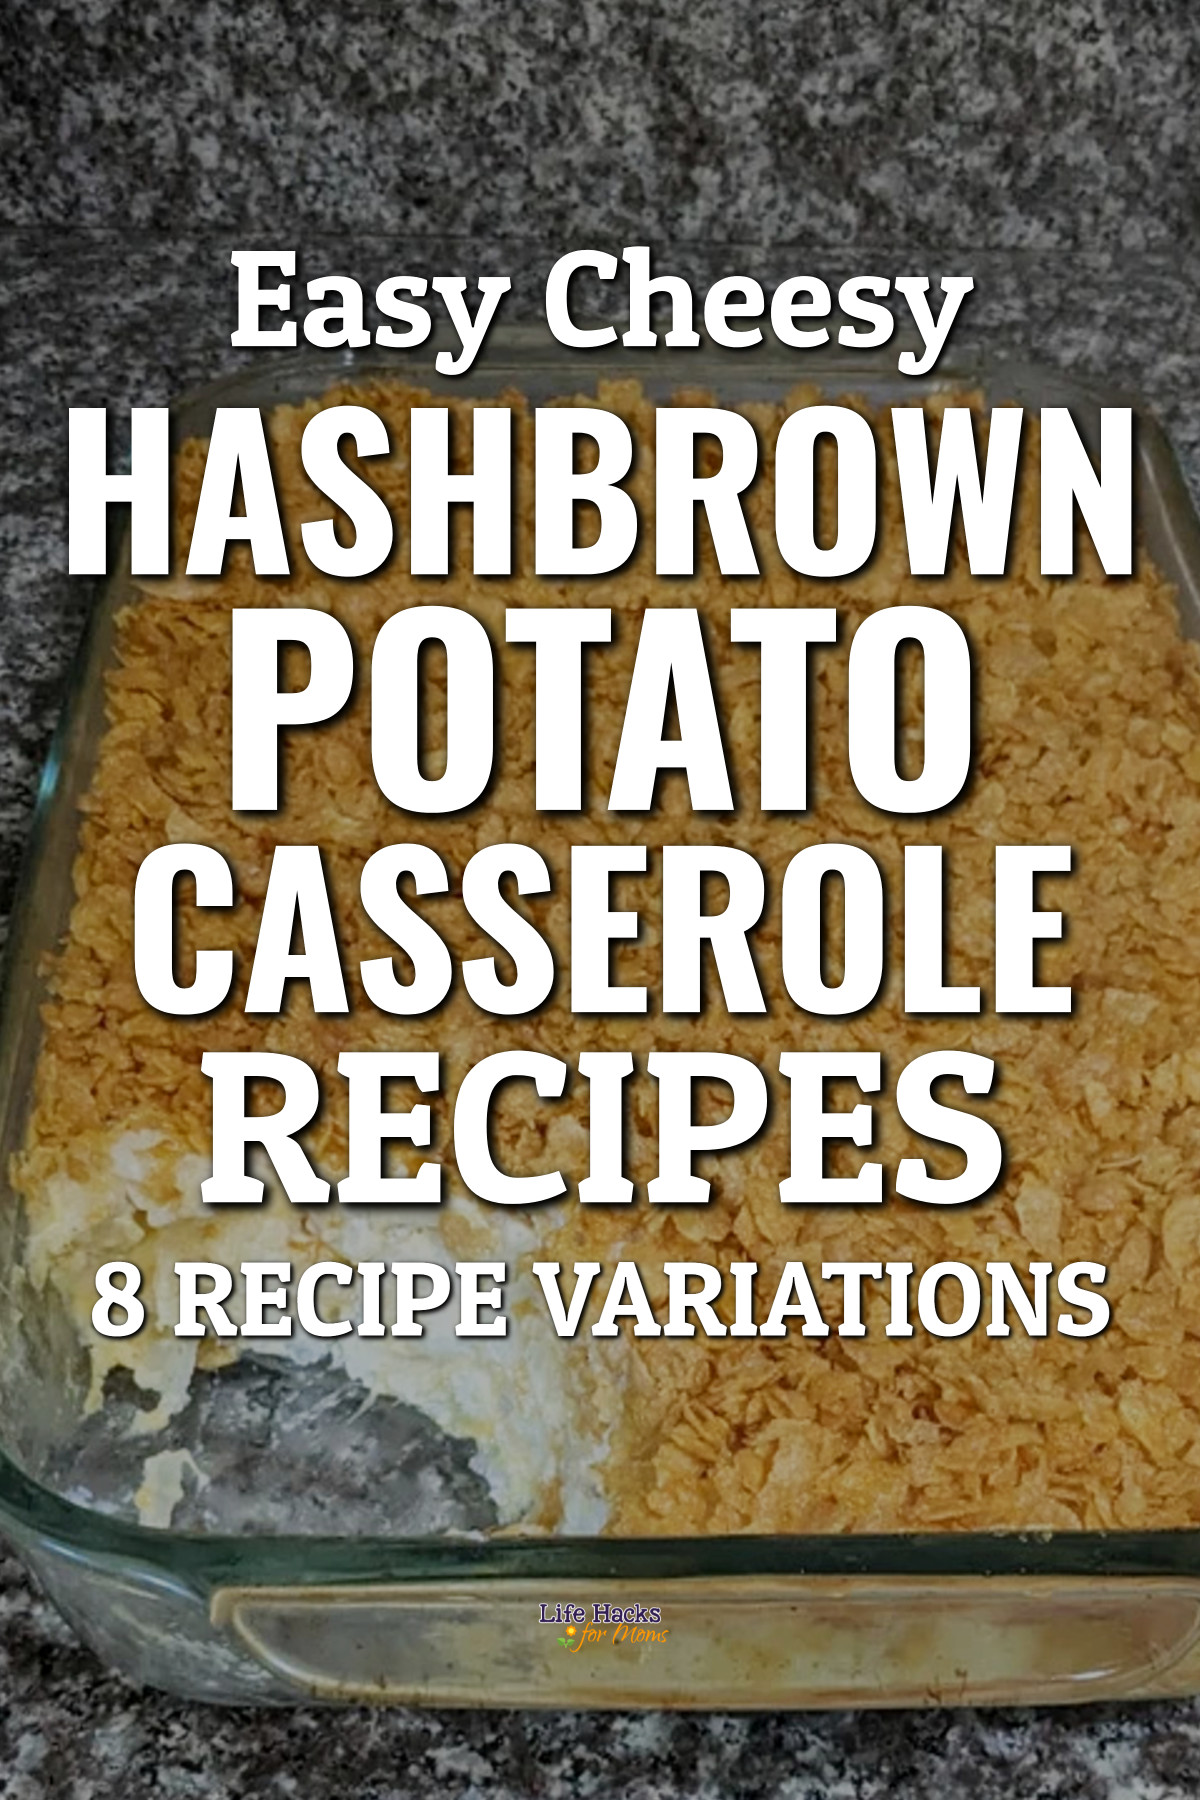 Easy Cheesy Hashbrown Potato Casserole Recipes